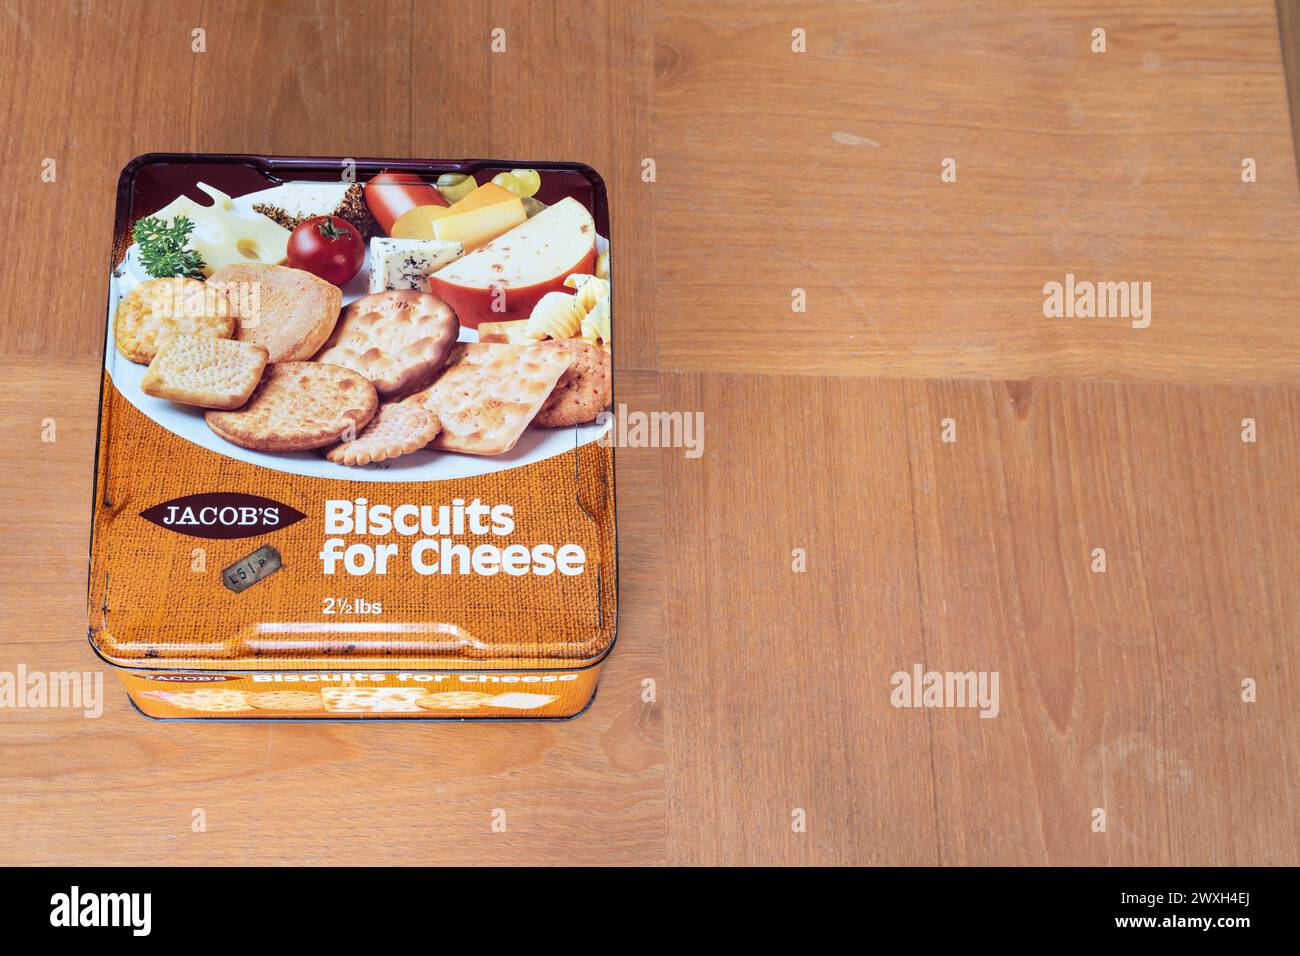 Boîte à biscuits vintage des années 1970 - biscuits Jacob pour fromage Banque D'Images